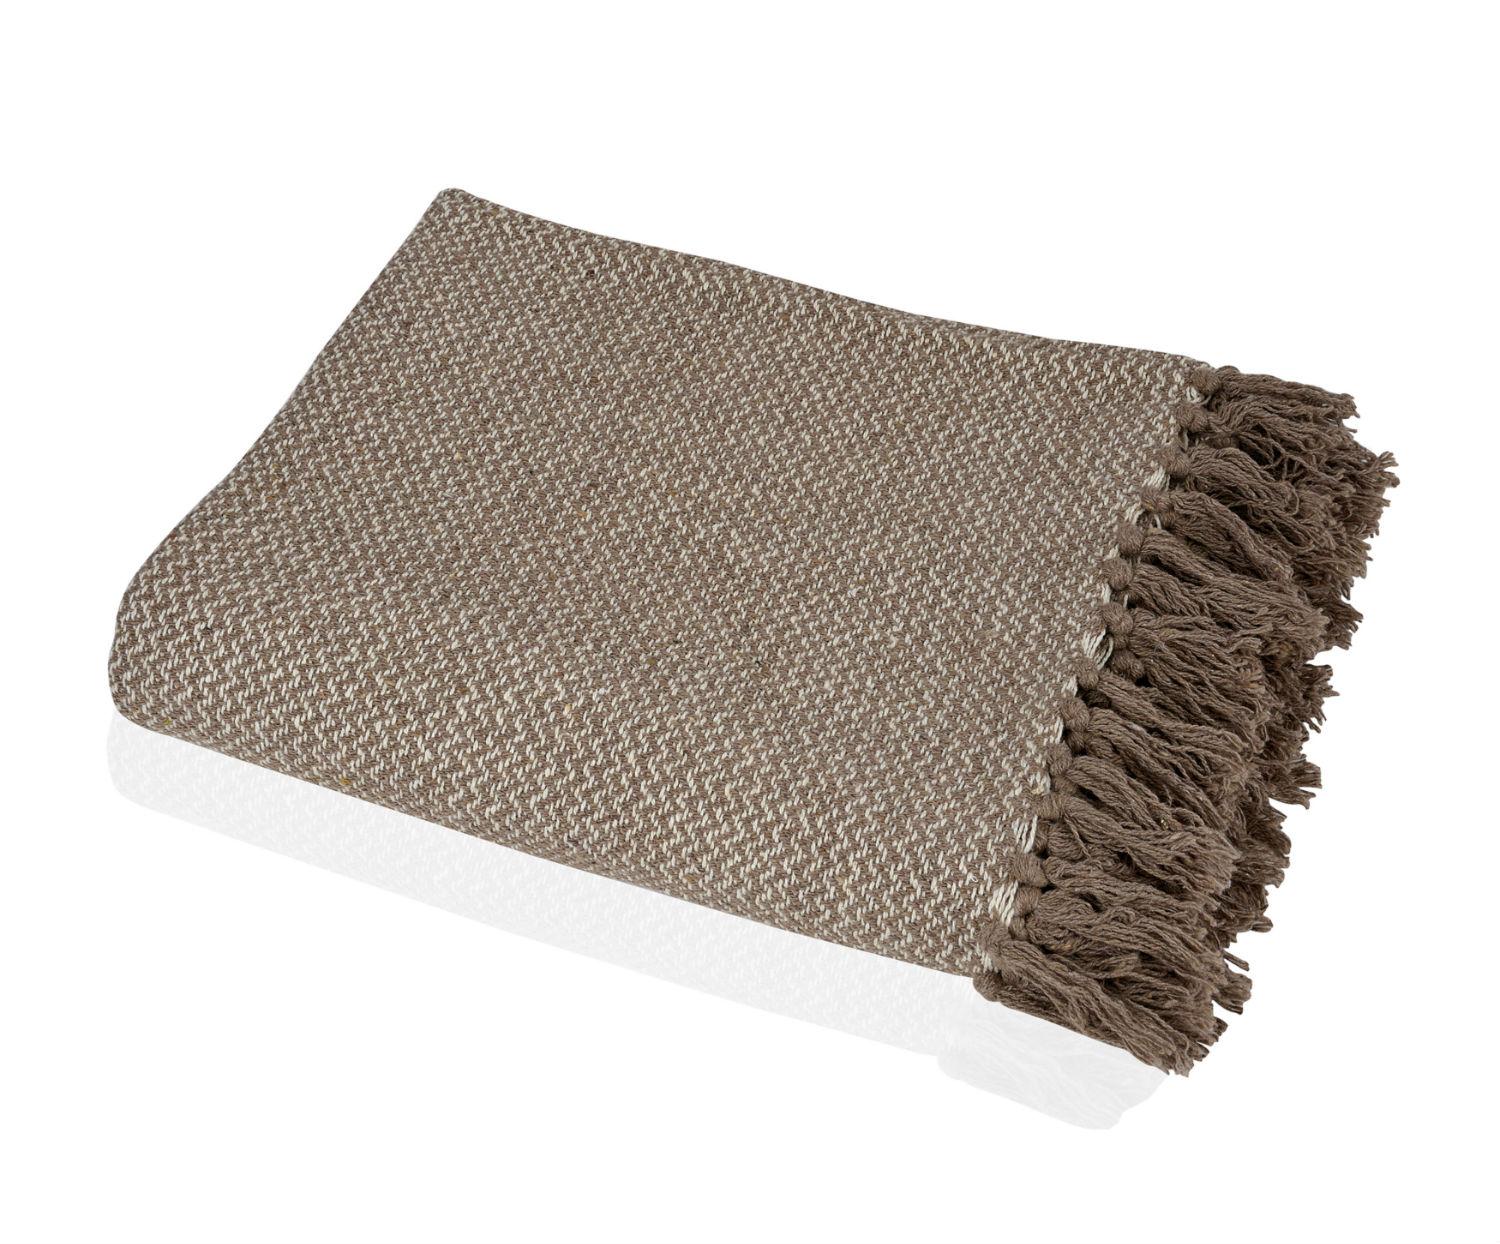 Cotton Blanket _ Beige / Brown